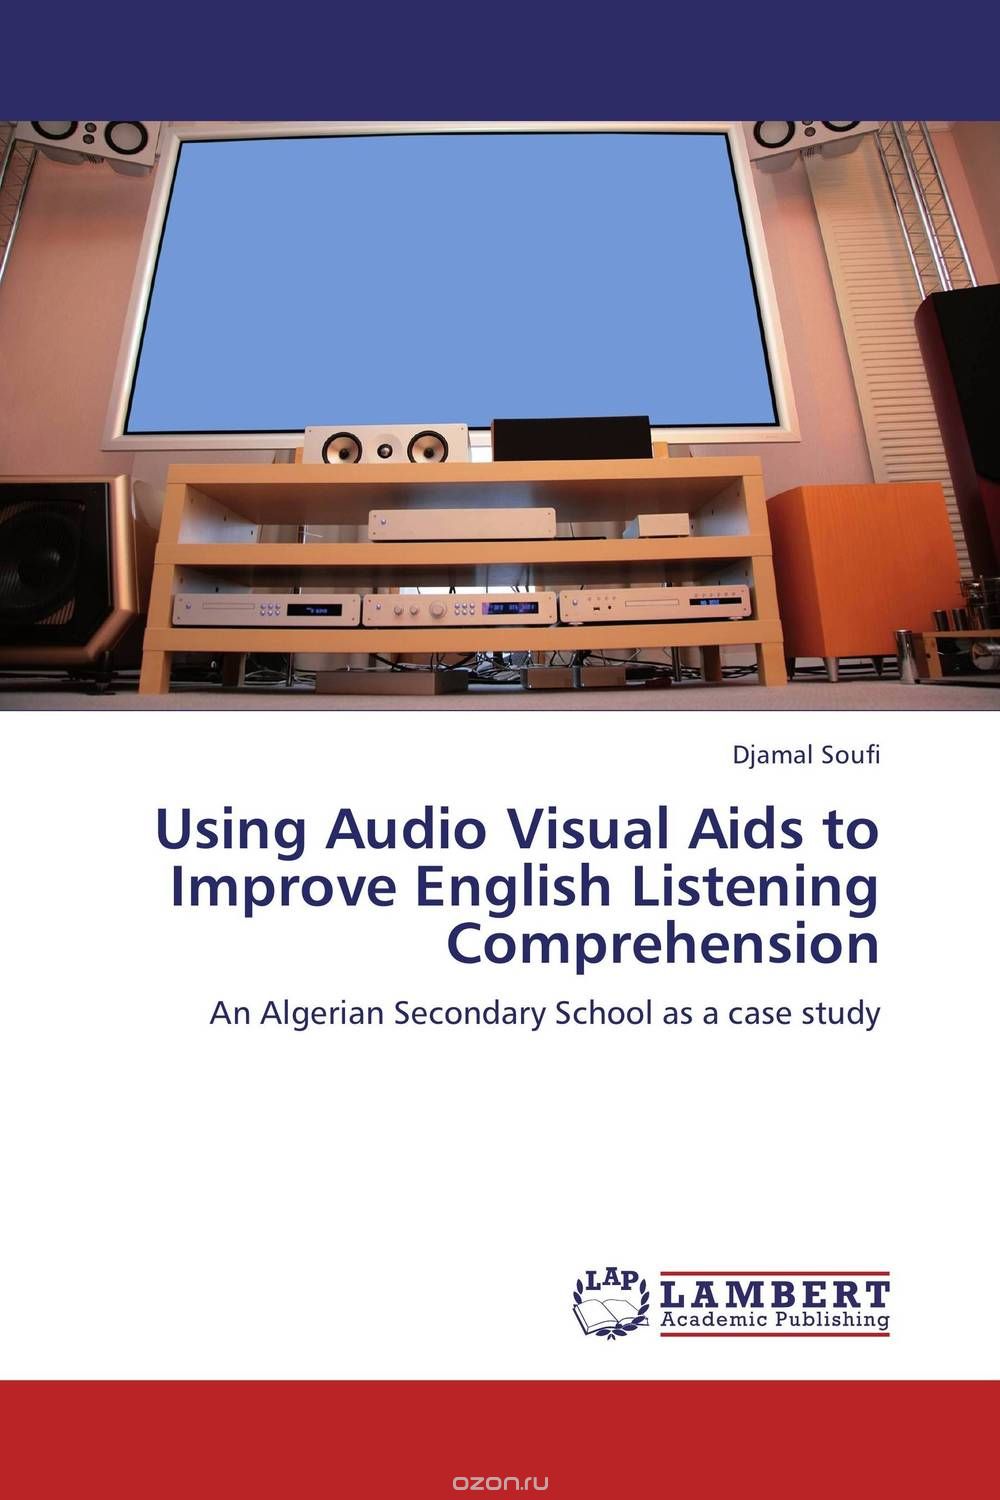 Скачать книгу "Using Audio Visual Aids to Improve English Listening Comprehension"